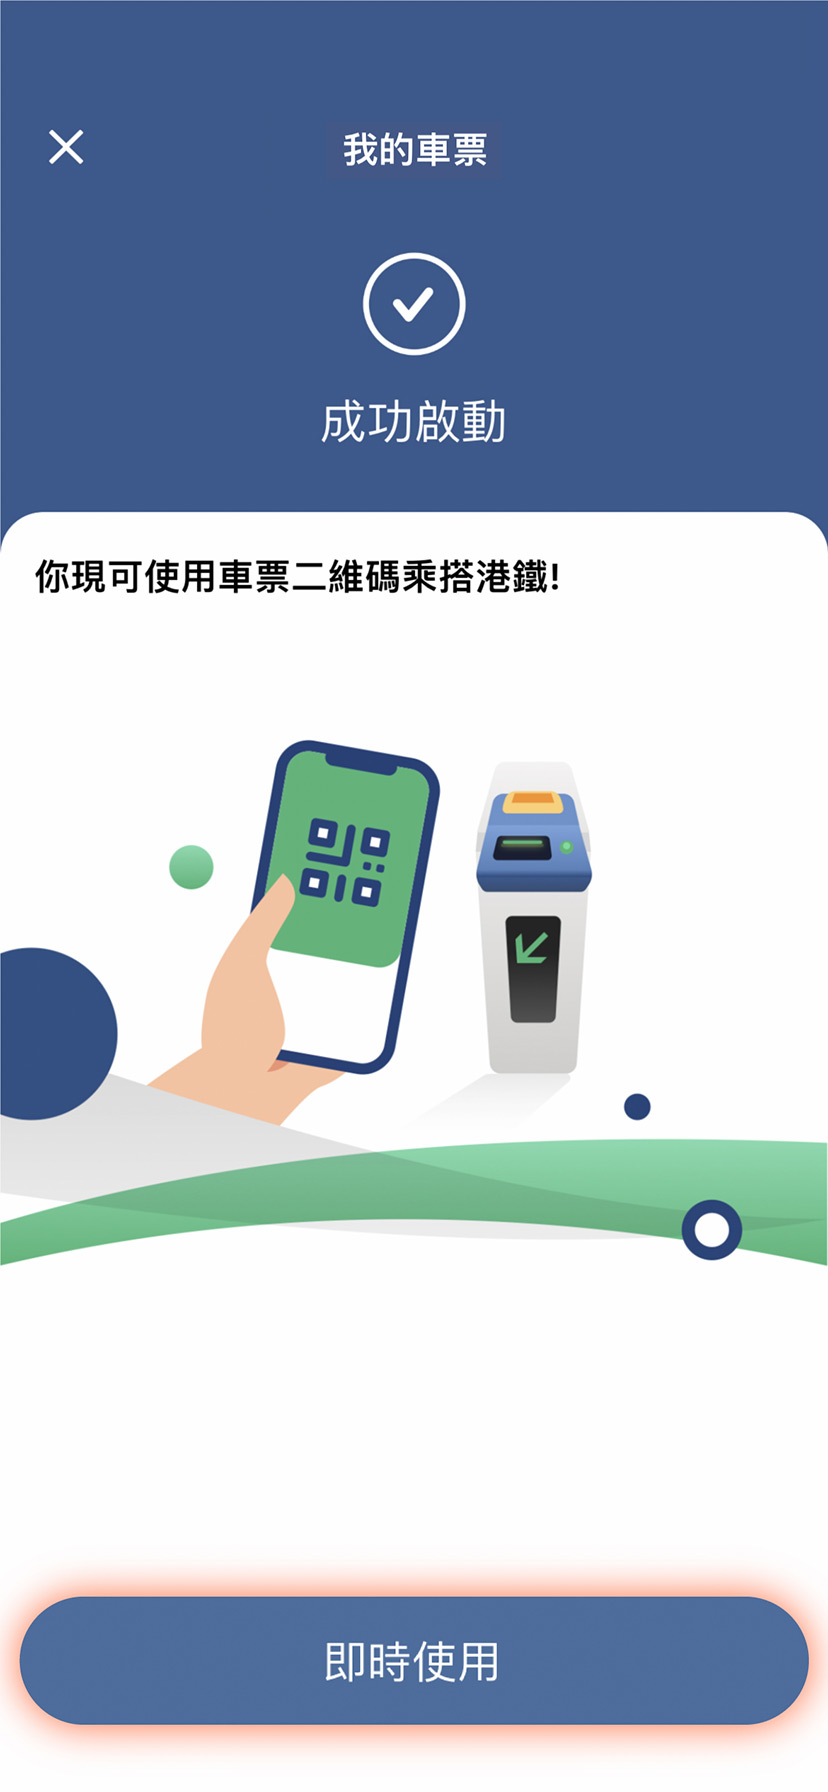 授權成功後你會被轉回MTR Mobile，按「 即時使用」開始使用車票二維碼